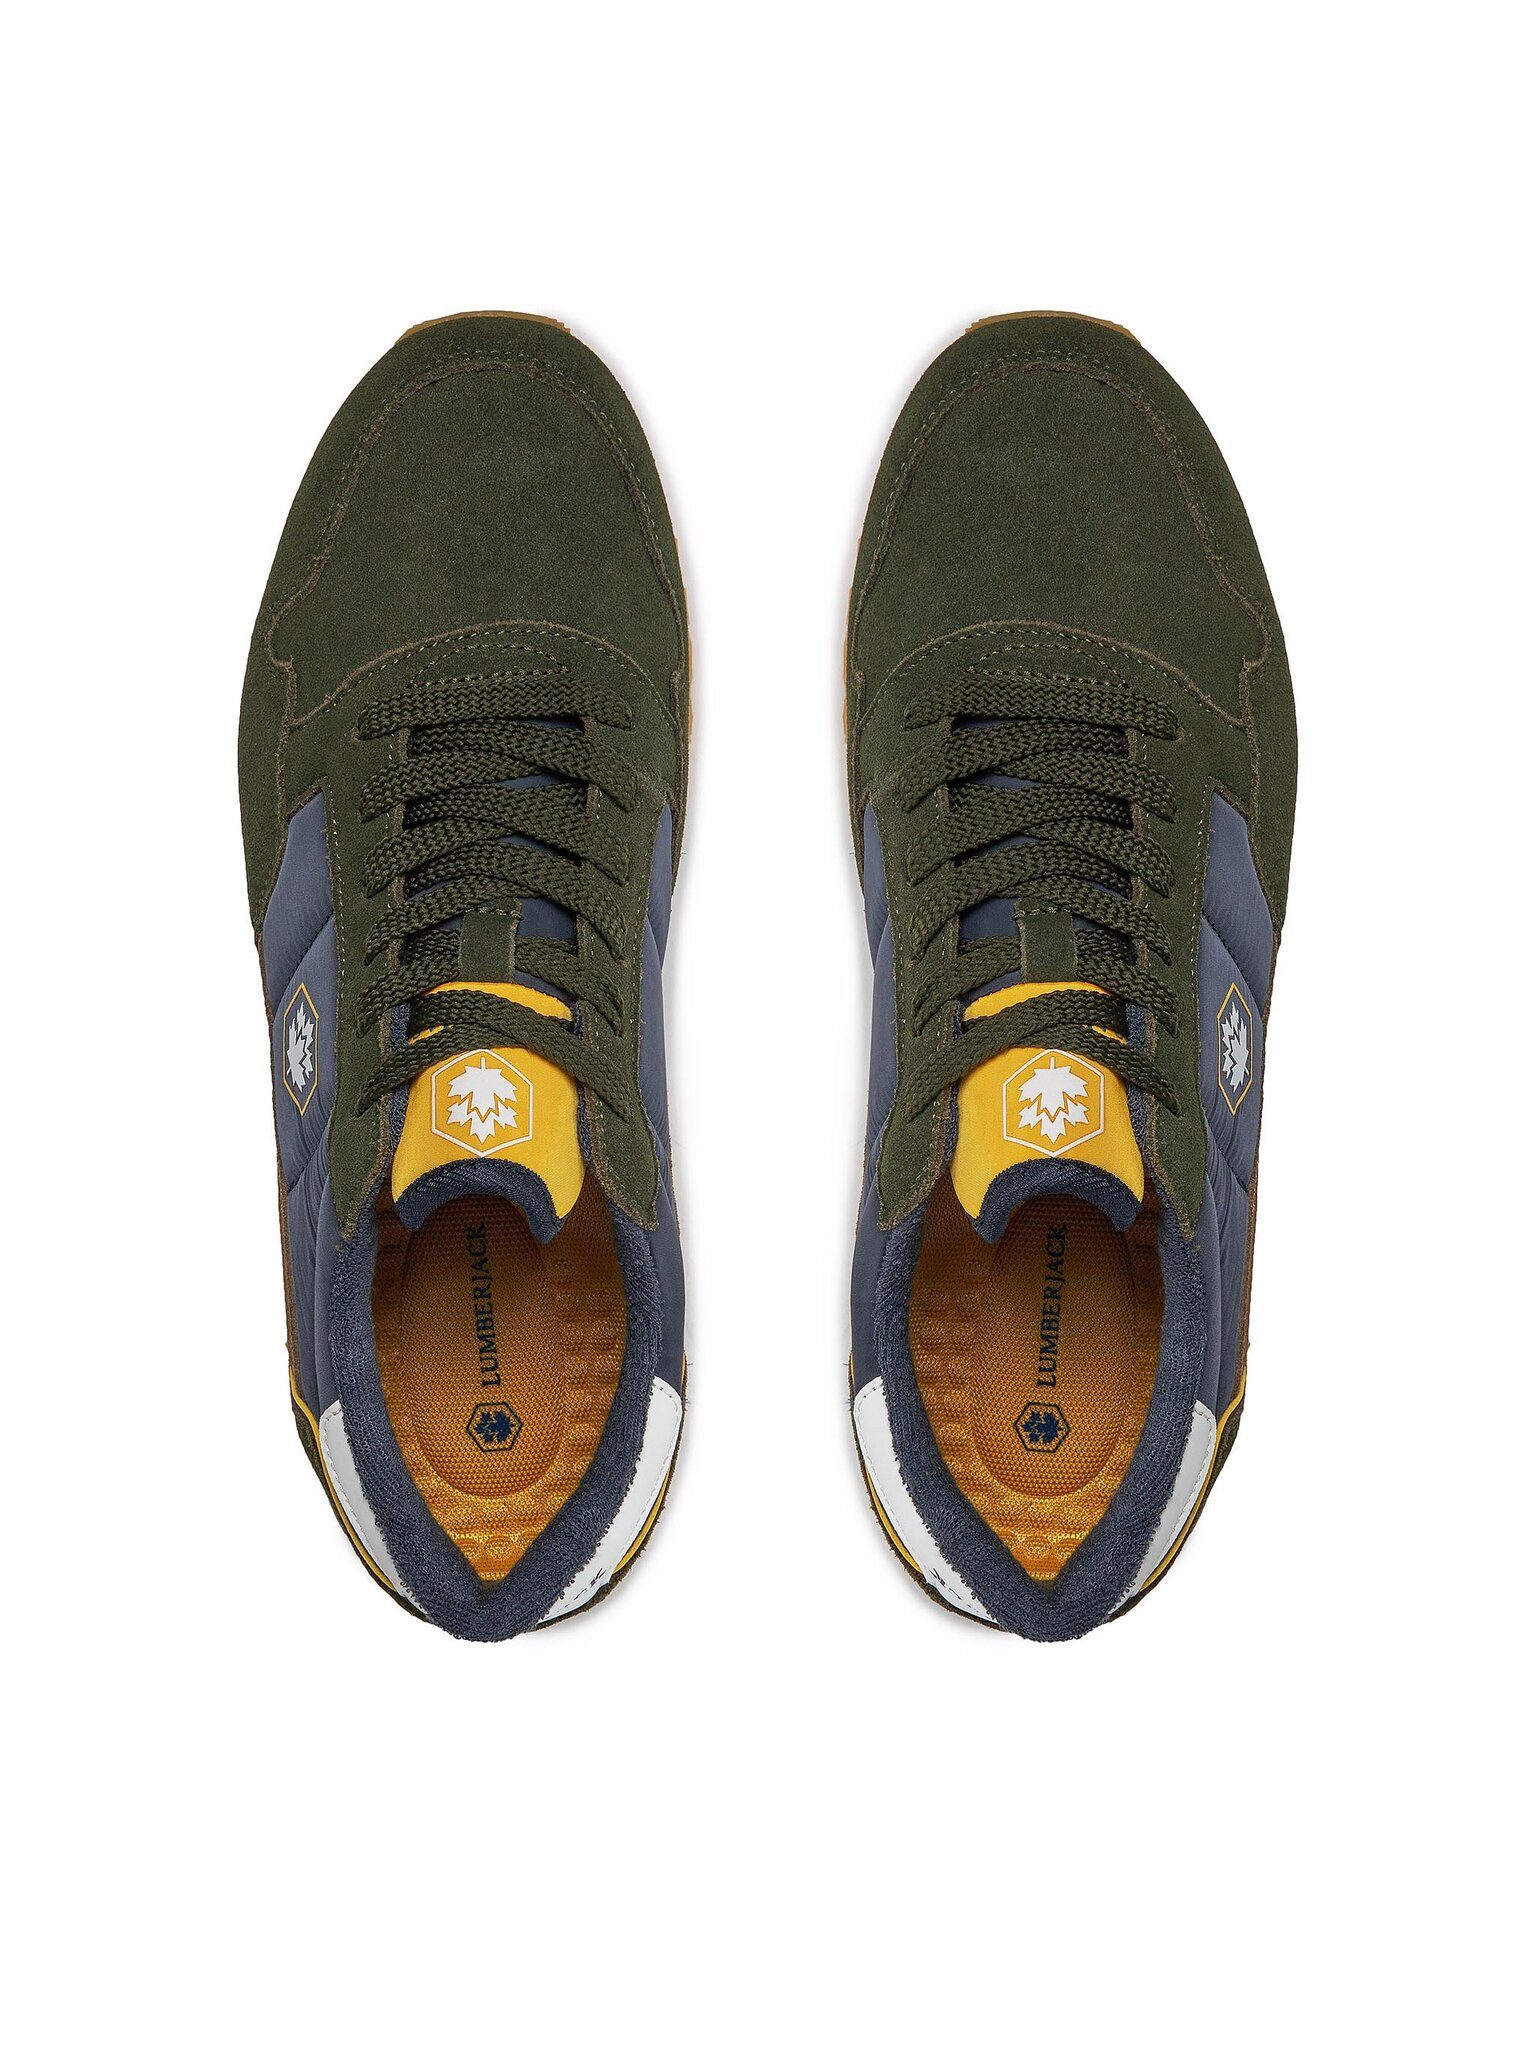 LUMBERJACK Sneakers WILSON SME6805-001-M94 Green/Navy Blue M1258 Sneaker